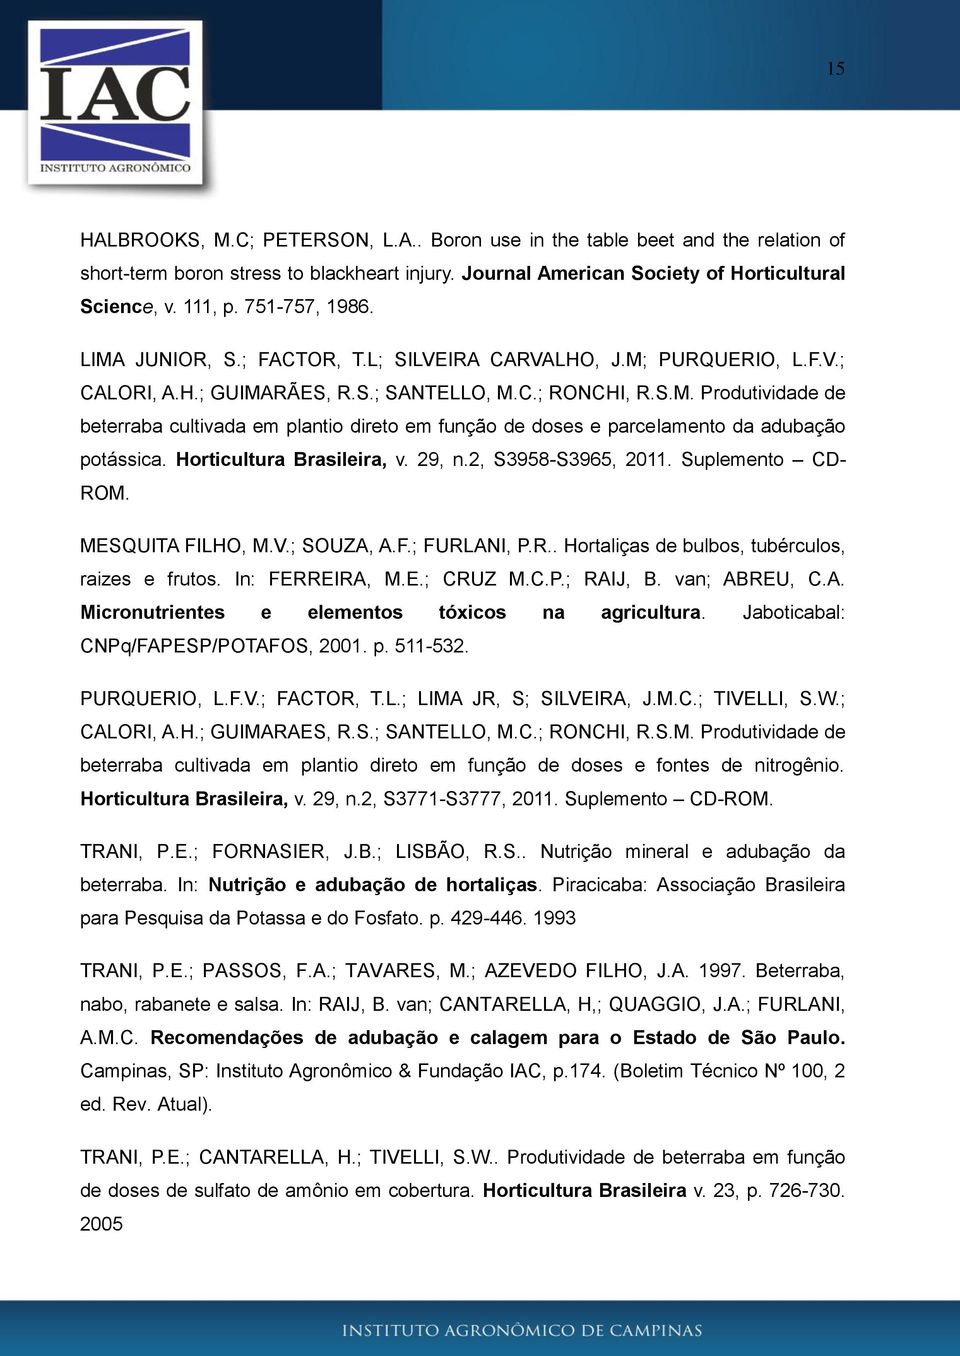 Horticultura Brasileira, v. 29, n.2, S3958-S3965, 2011. Suplemento CD- ROM. MESQUITA FILHO, M.V.; SOUZA, A.F.; FURLANI, P.R.. Hortaliças de bulbos, tubérculos, raizes e frutos. In: FERREIRA, M.E.; CRUZ M.